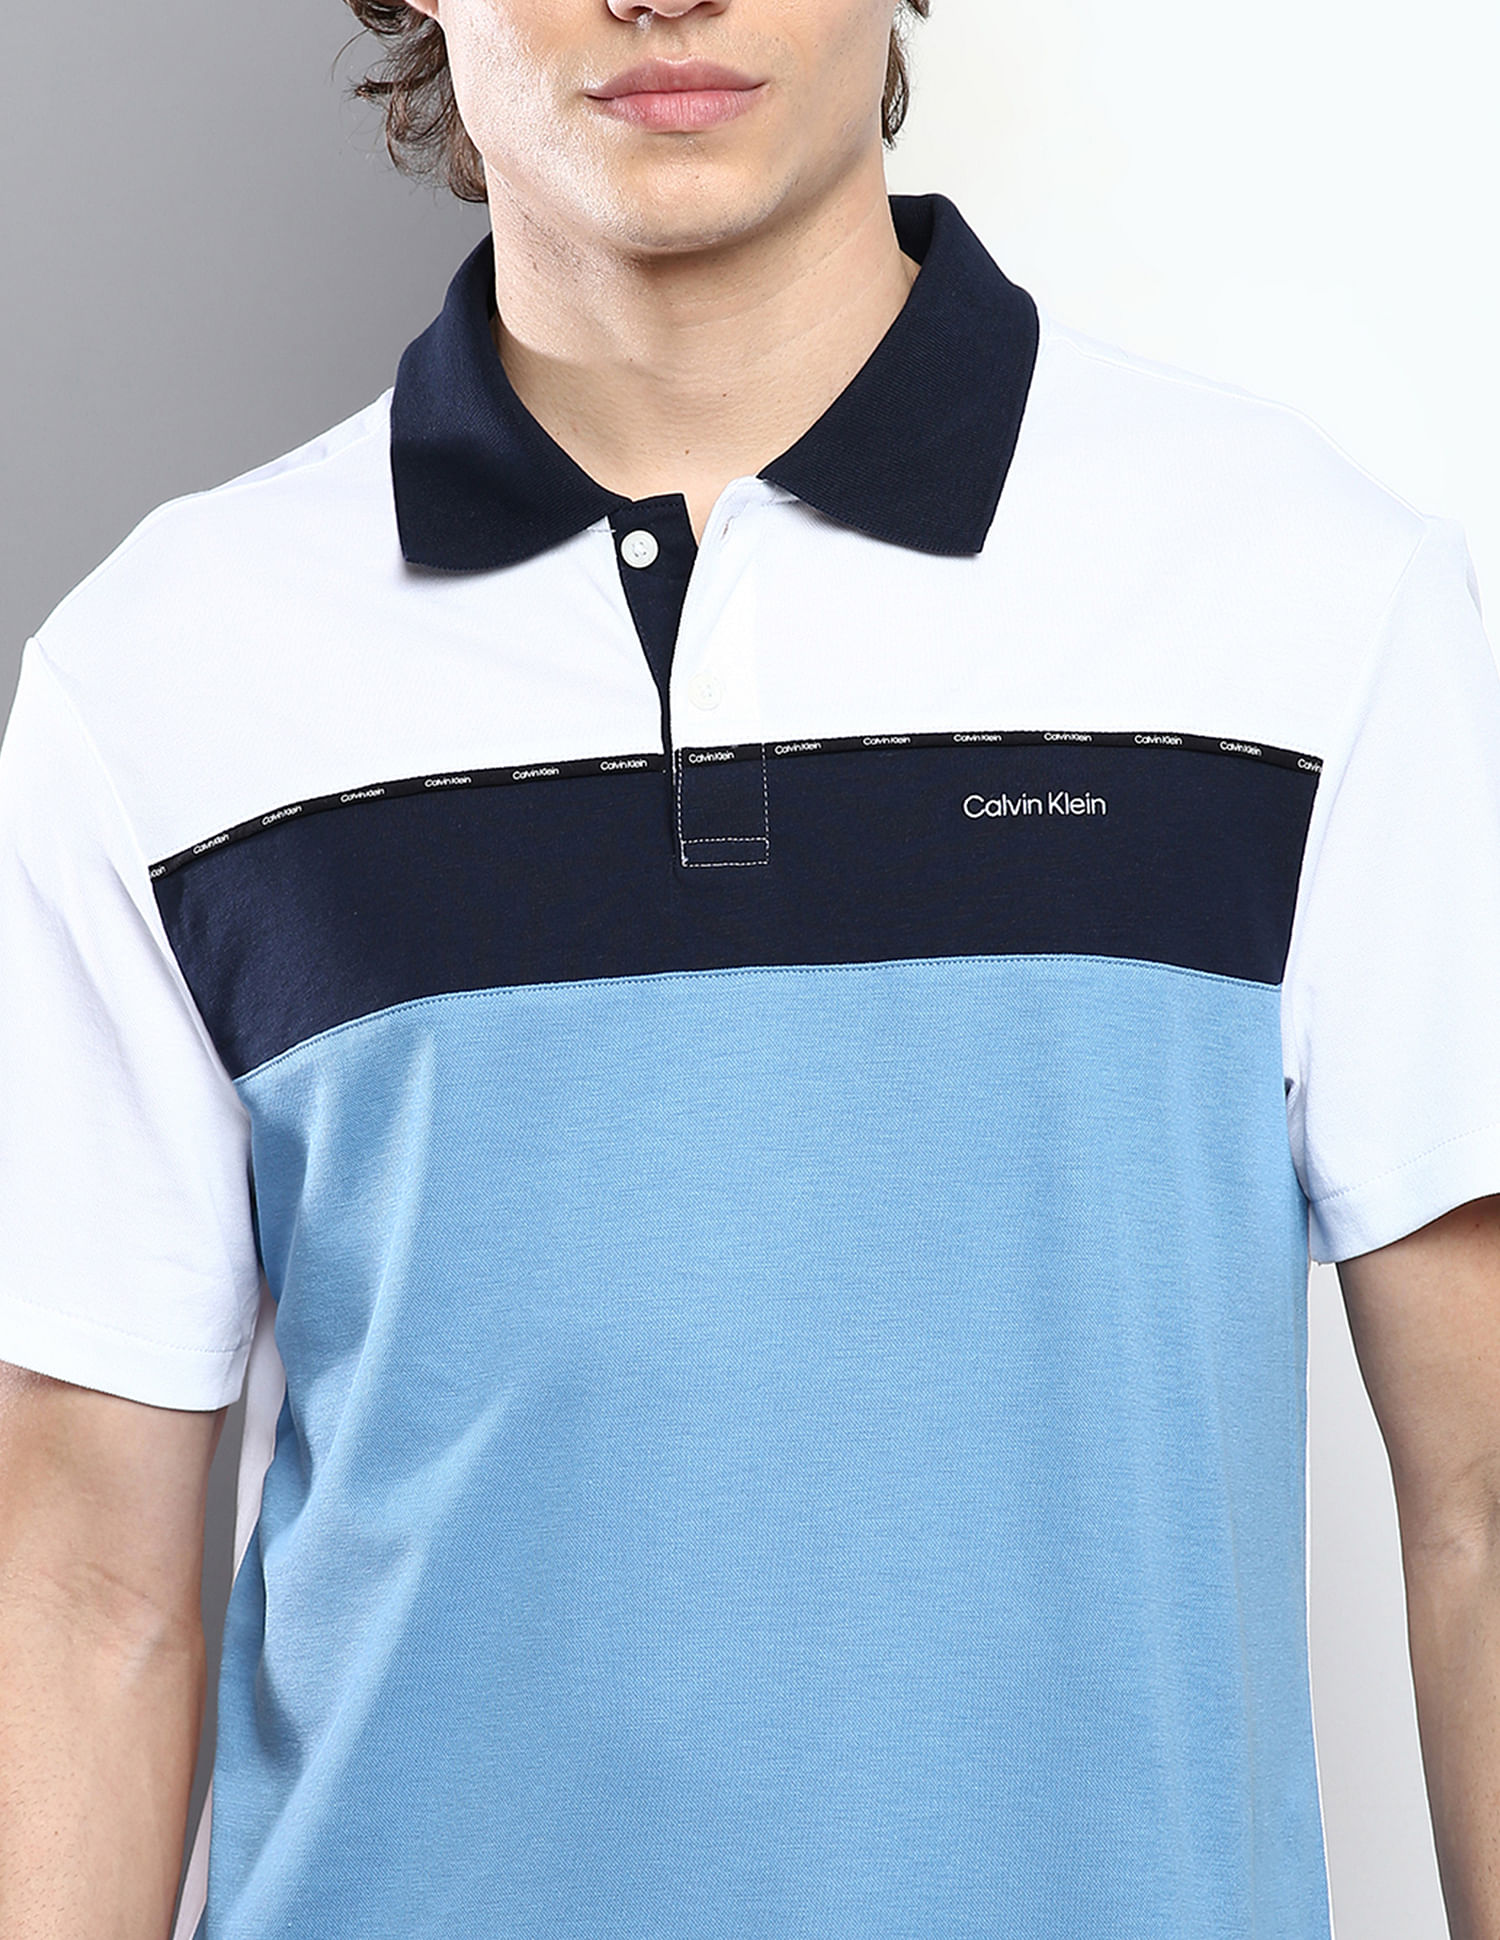 Buy Calvin Klein Piping Colour Block Polo Shirt | Poloshirts